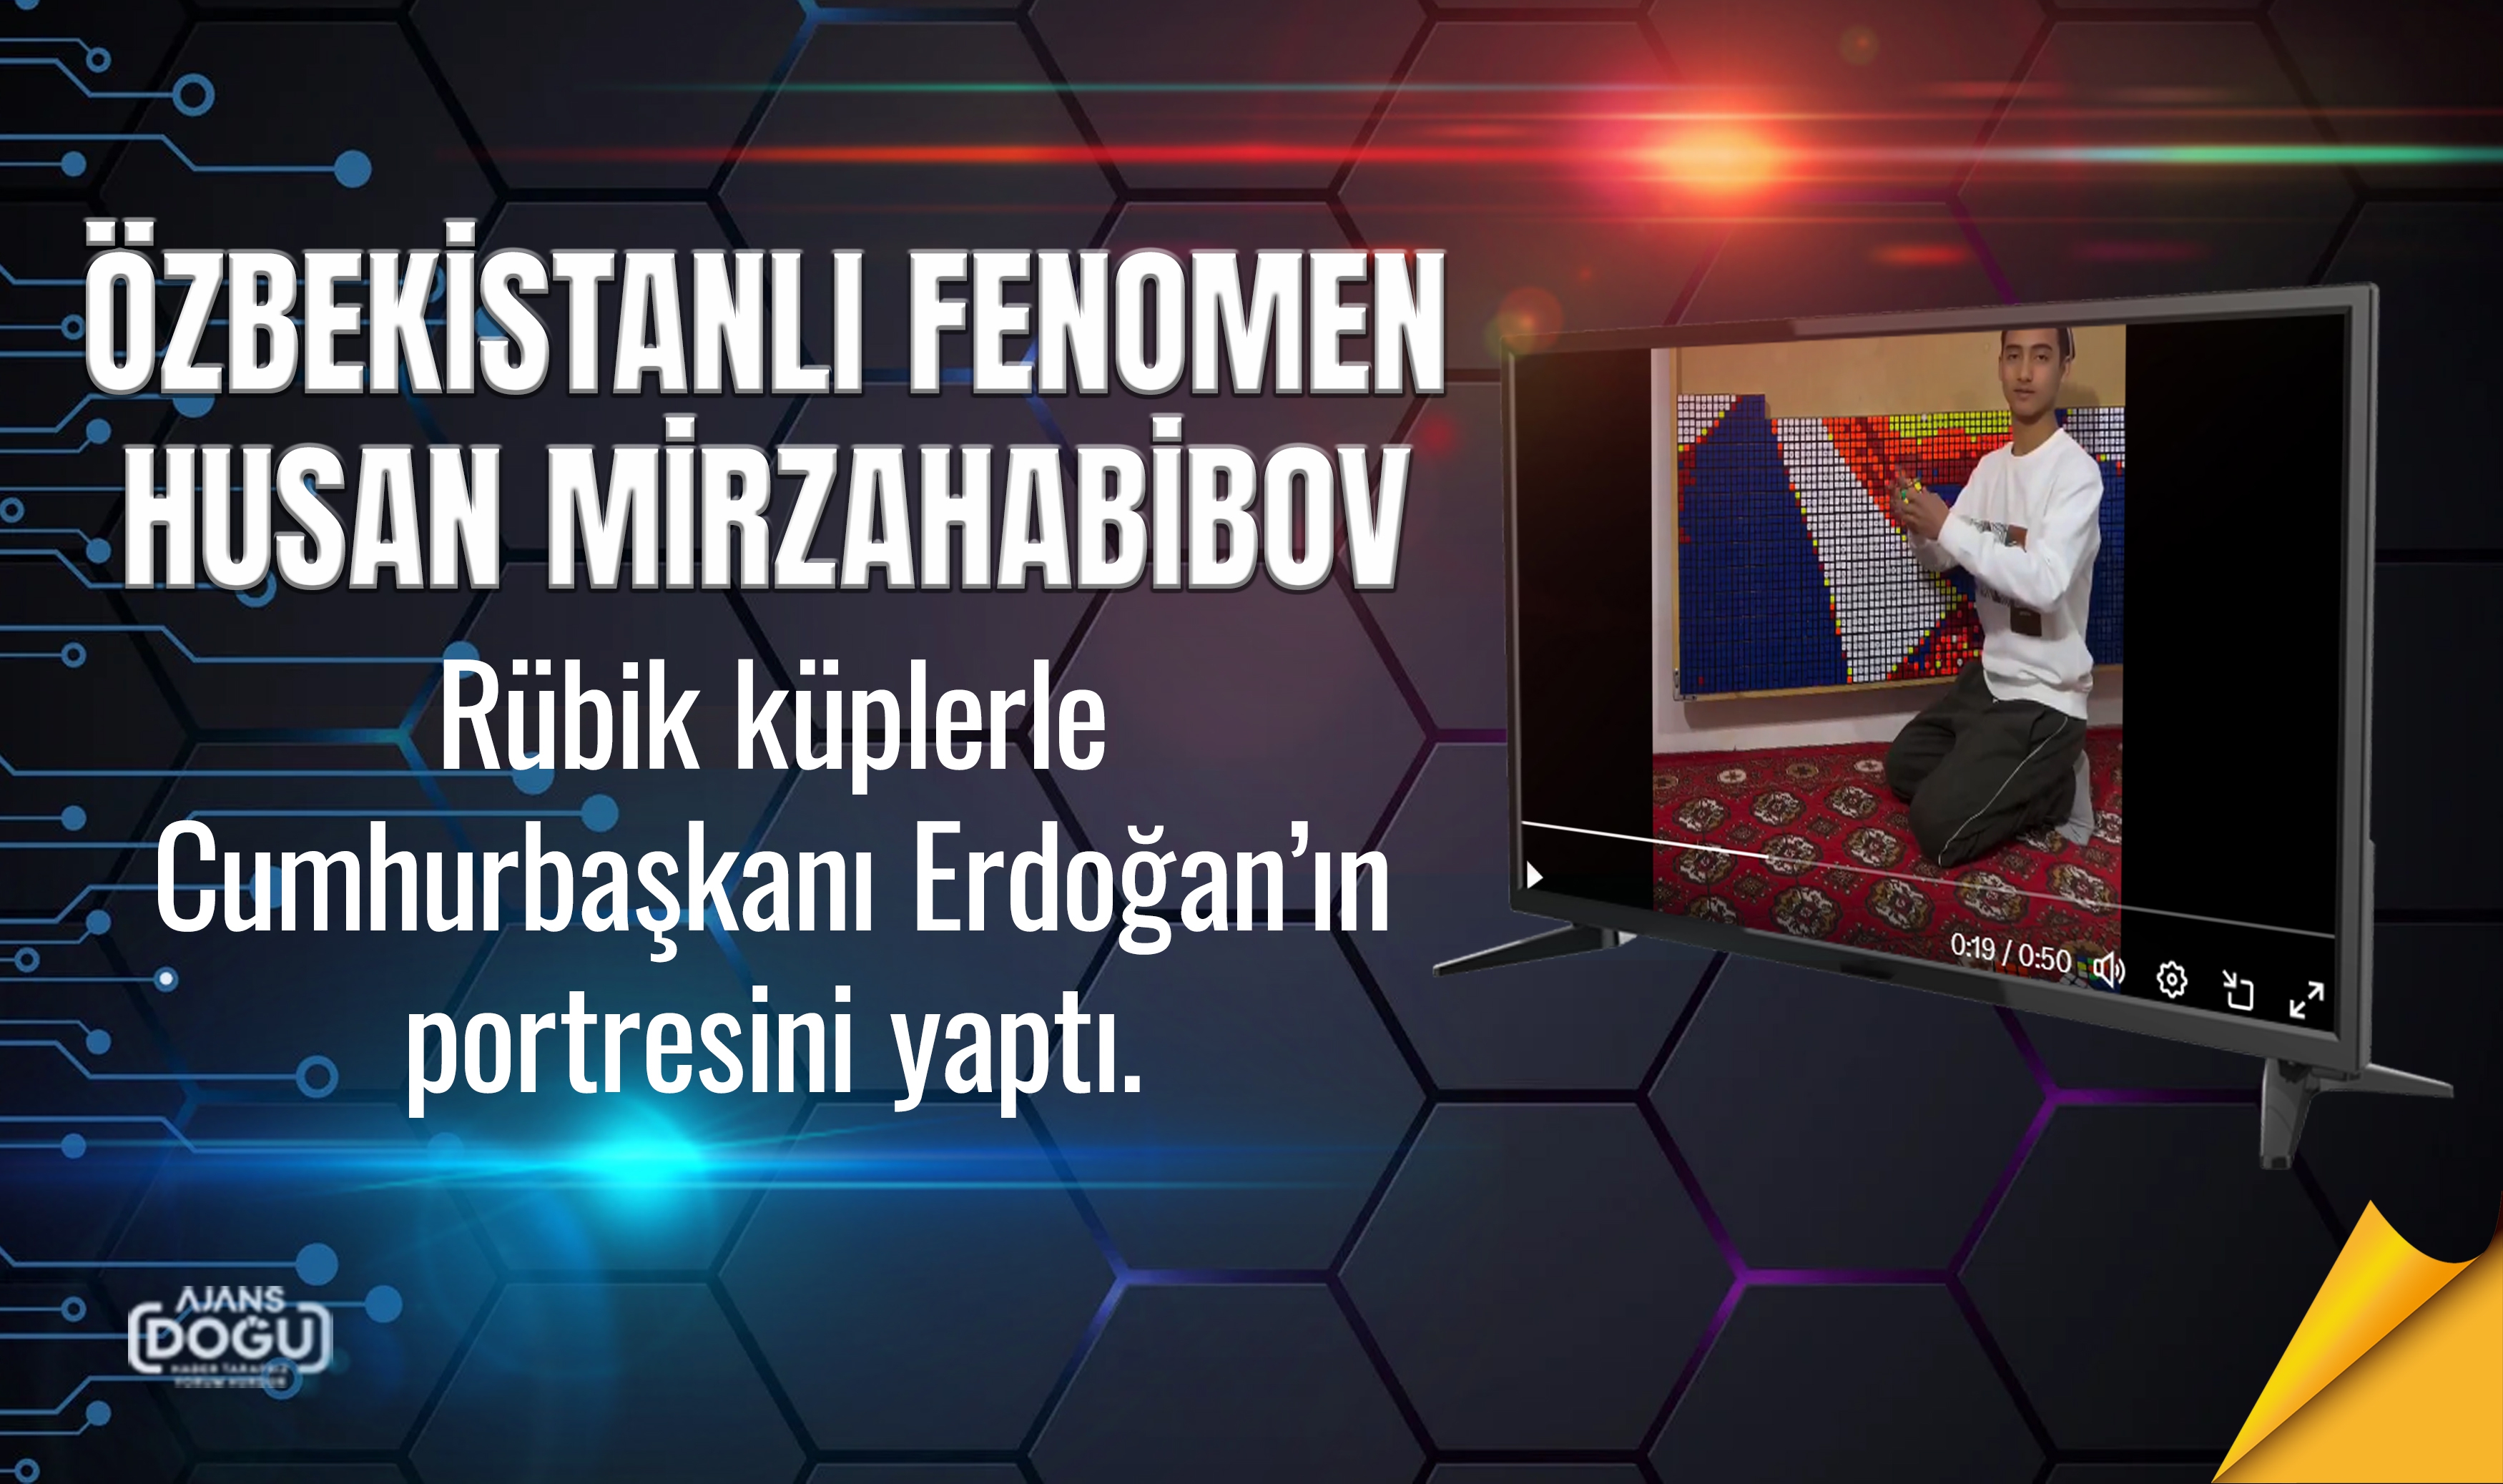 Özbekistanlı fenomen Husan Mirzahabibov, rübik küplerle Cumhurbaşkanı Erdoğan’ın portresini yaptı.